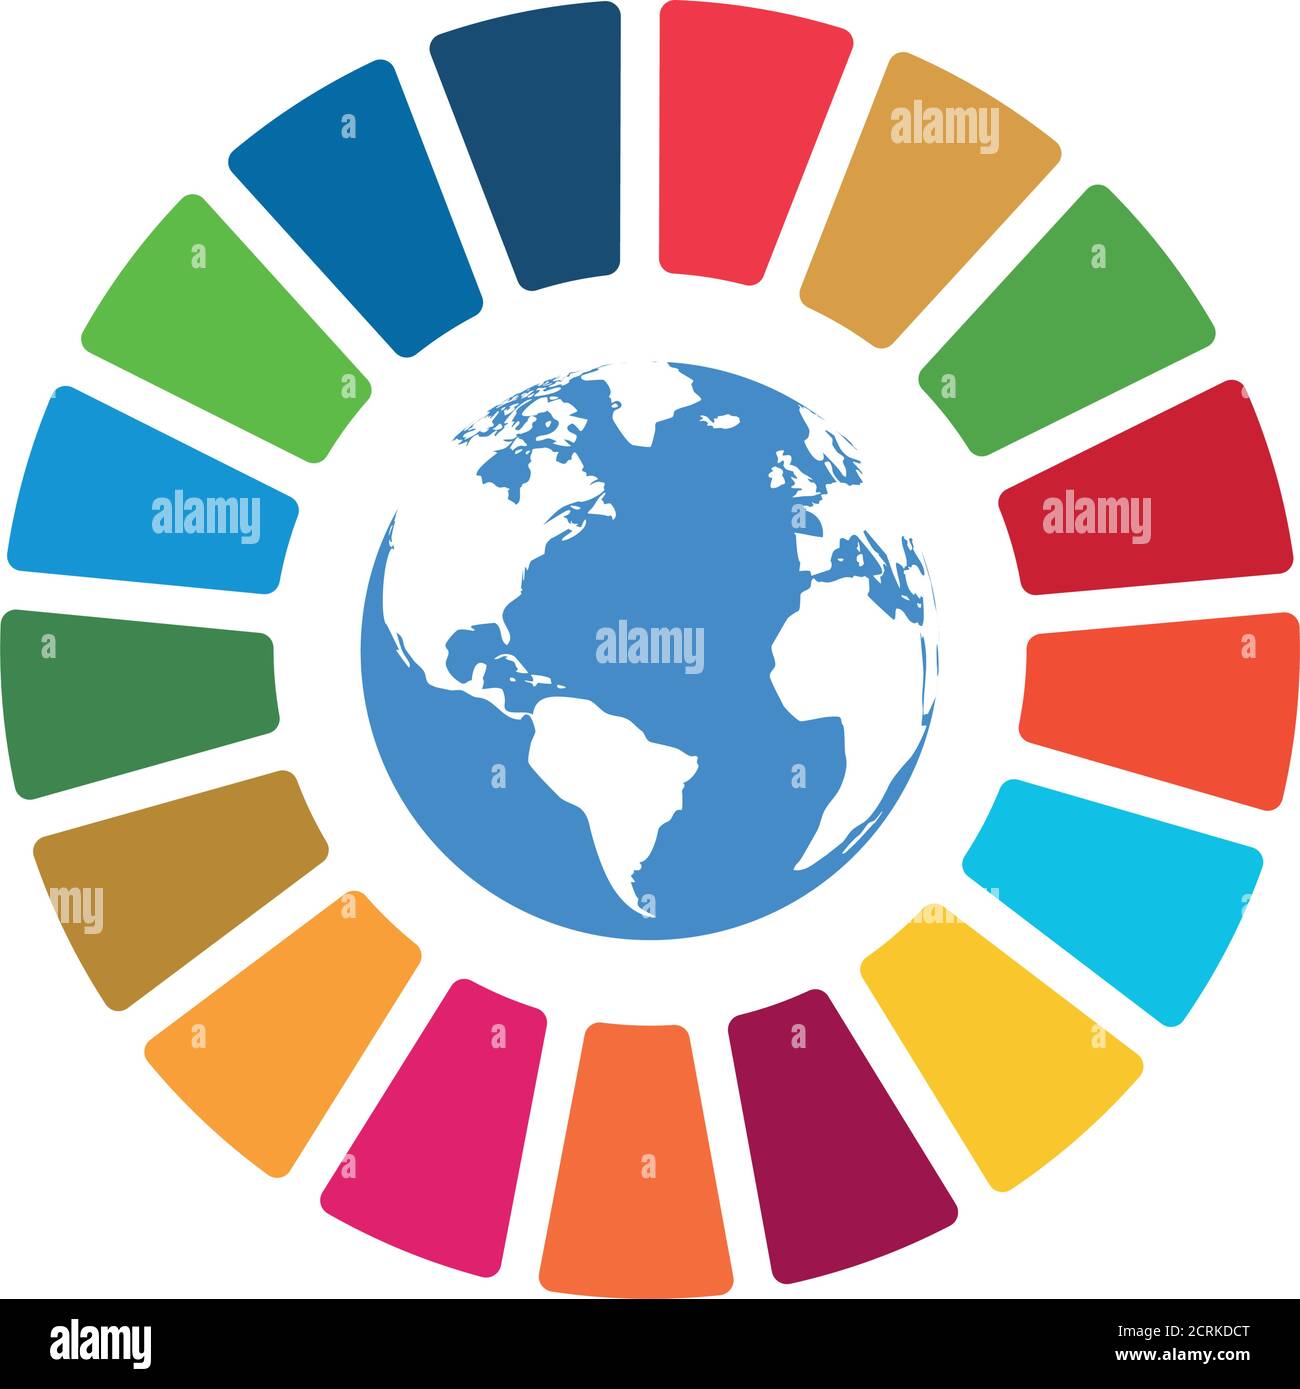 Vektor-Element für soziale Verantwortung von Unternehmen. Sustainable Development Goals - Vektorgrafik der Vereinten Nationen. SDG-Farbsymbol. Piktogramm für Anzeige Stock Vektor